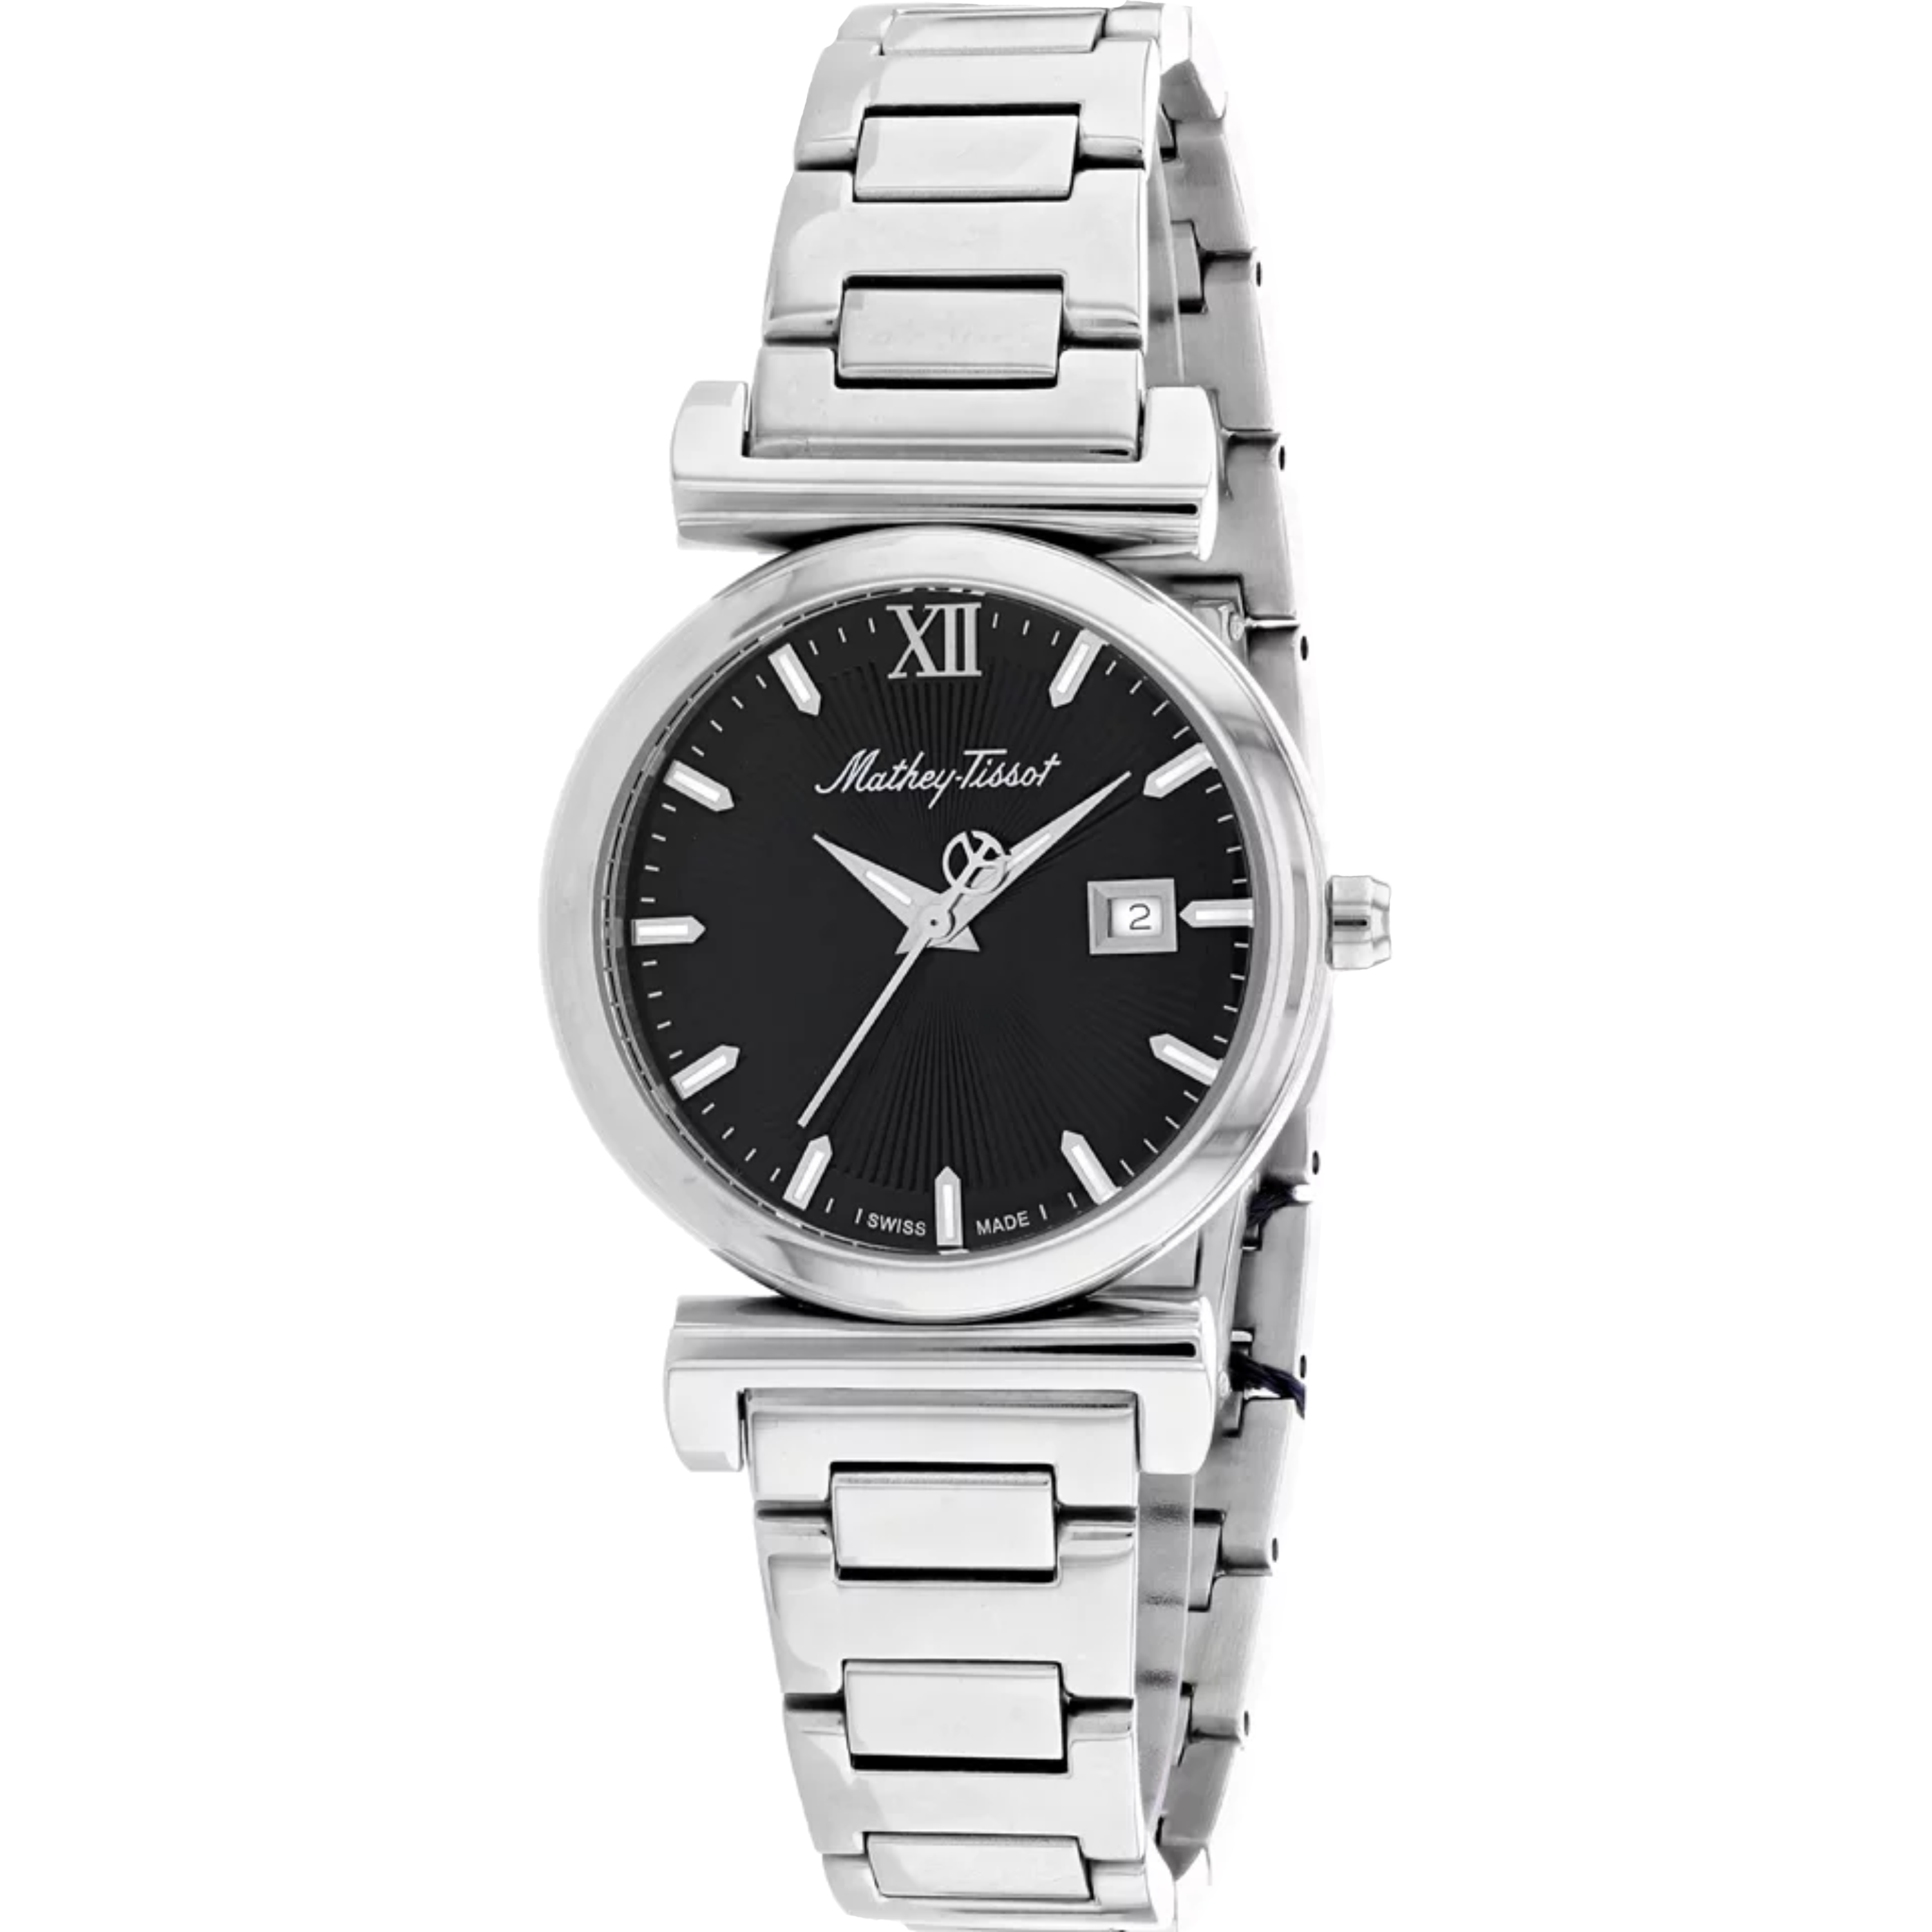 שעון יד לאישה Mathey Tissot D410AN 32mm צבע כסף/שחור/זכוכית ספיר - אחריות לשנה ע"י היבואן